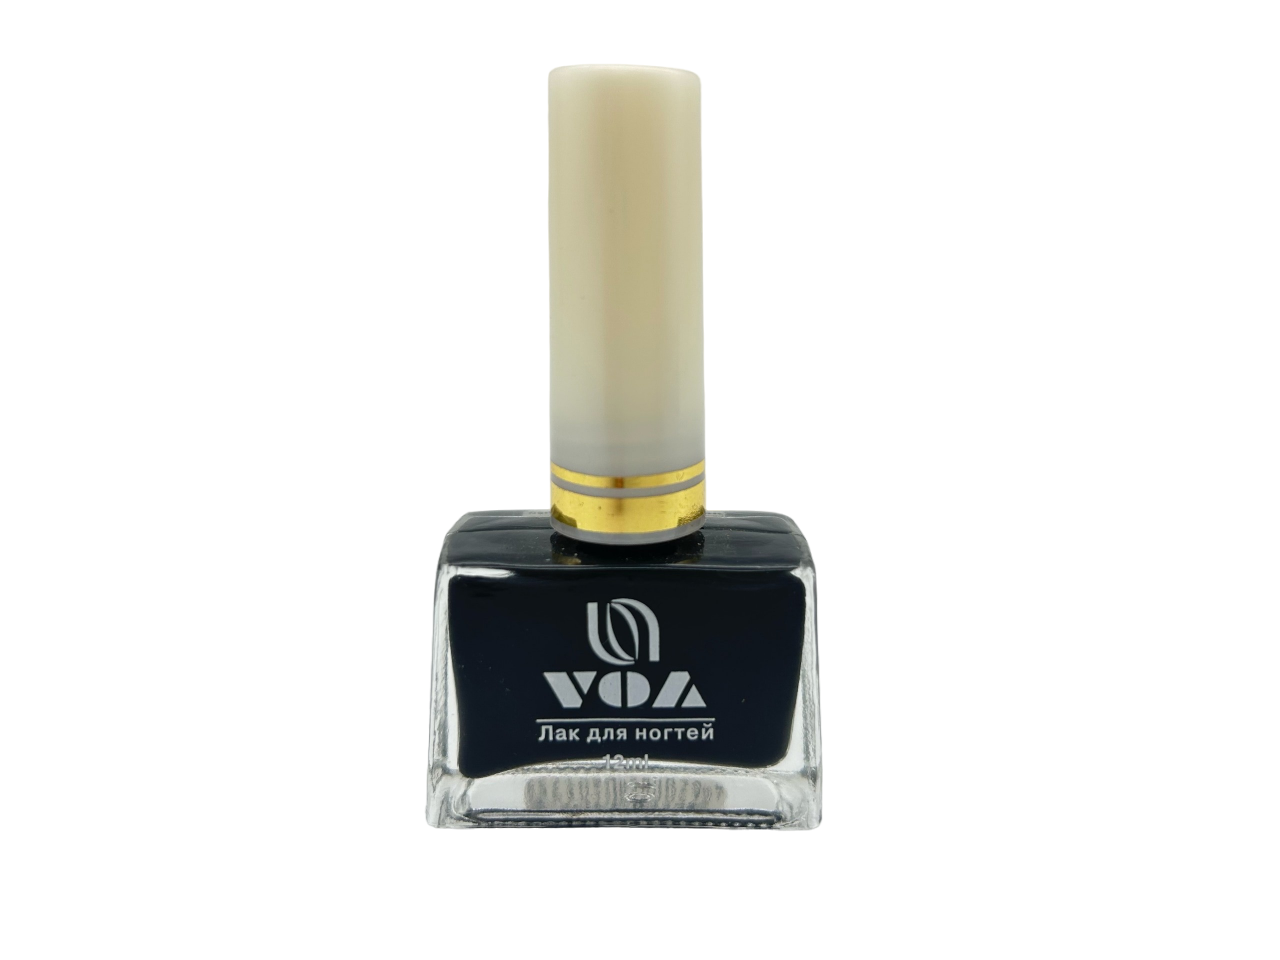 Лак для ногтей VOA устойчивый до цвет черный, 12 мл